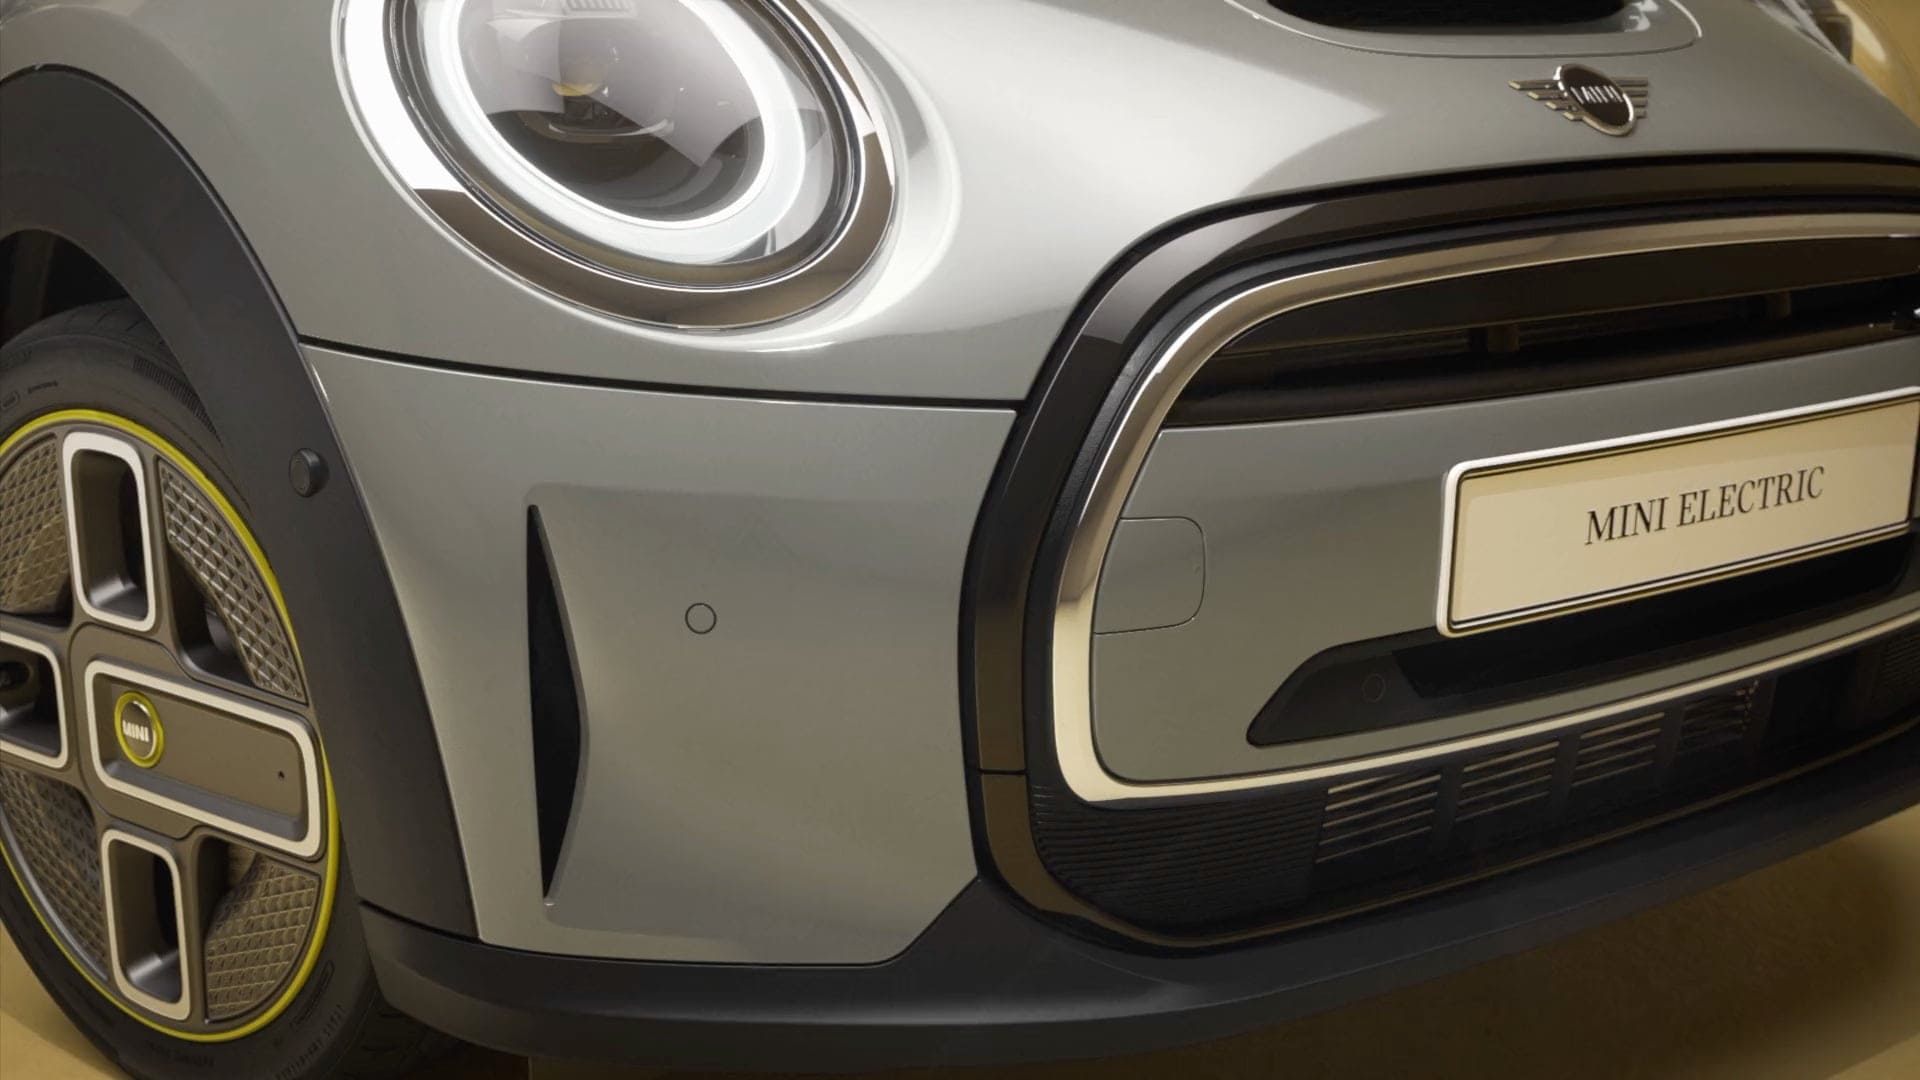 MINI Cooper S E Hatch 3 Portas - mini totalmente elétrico - vista lateral, prata